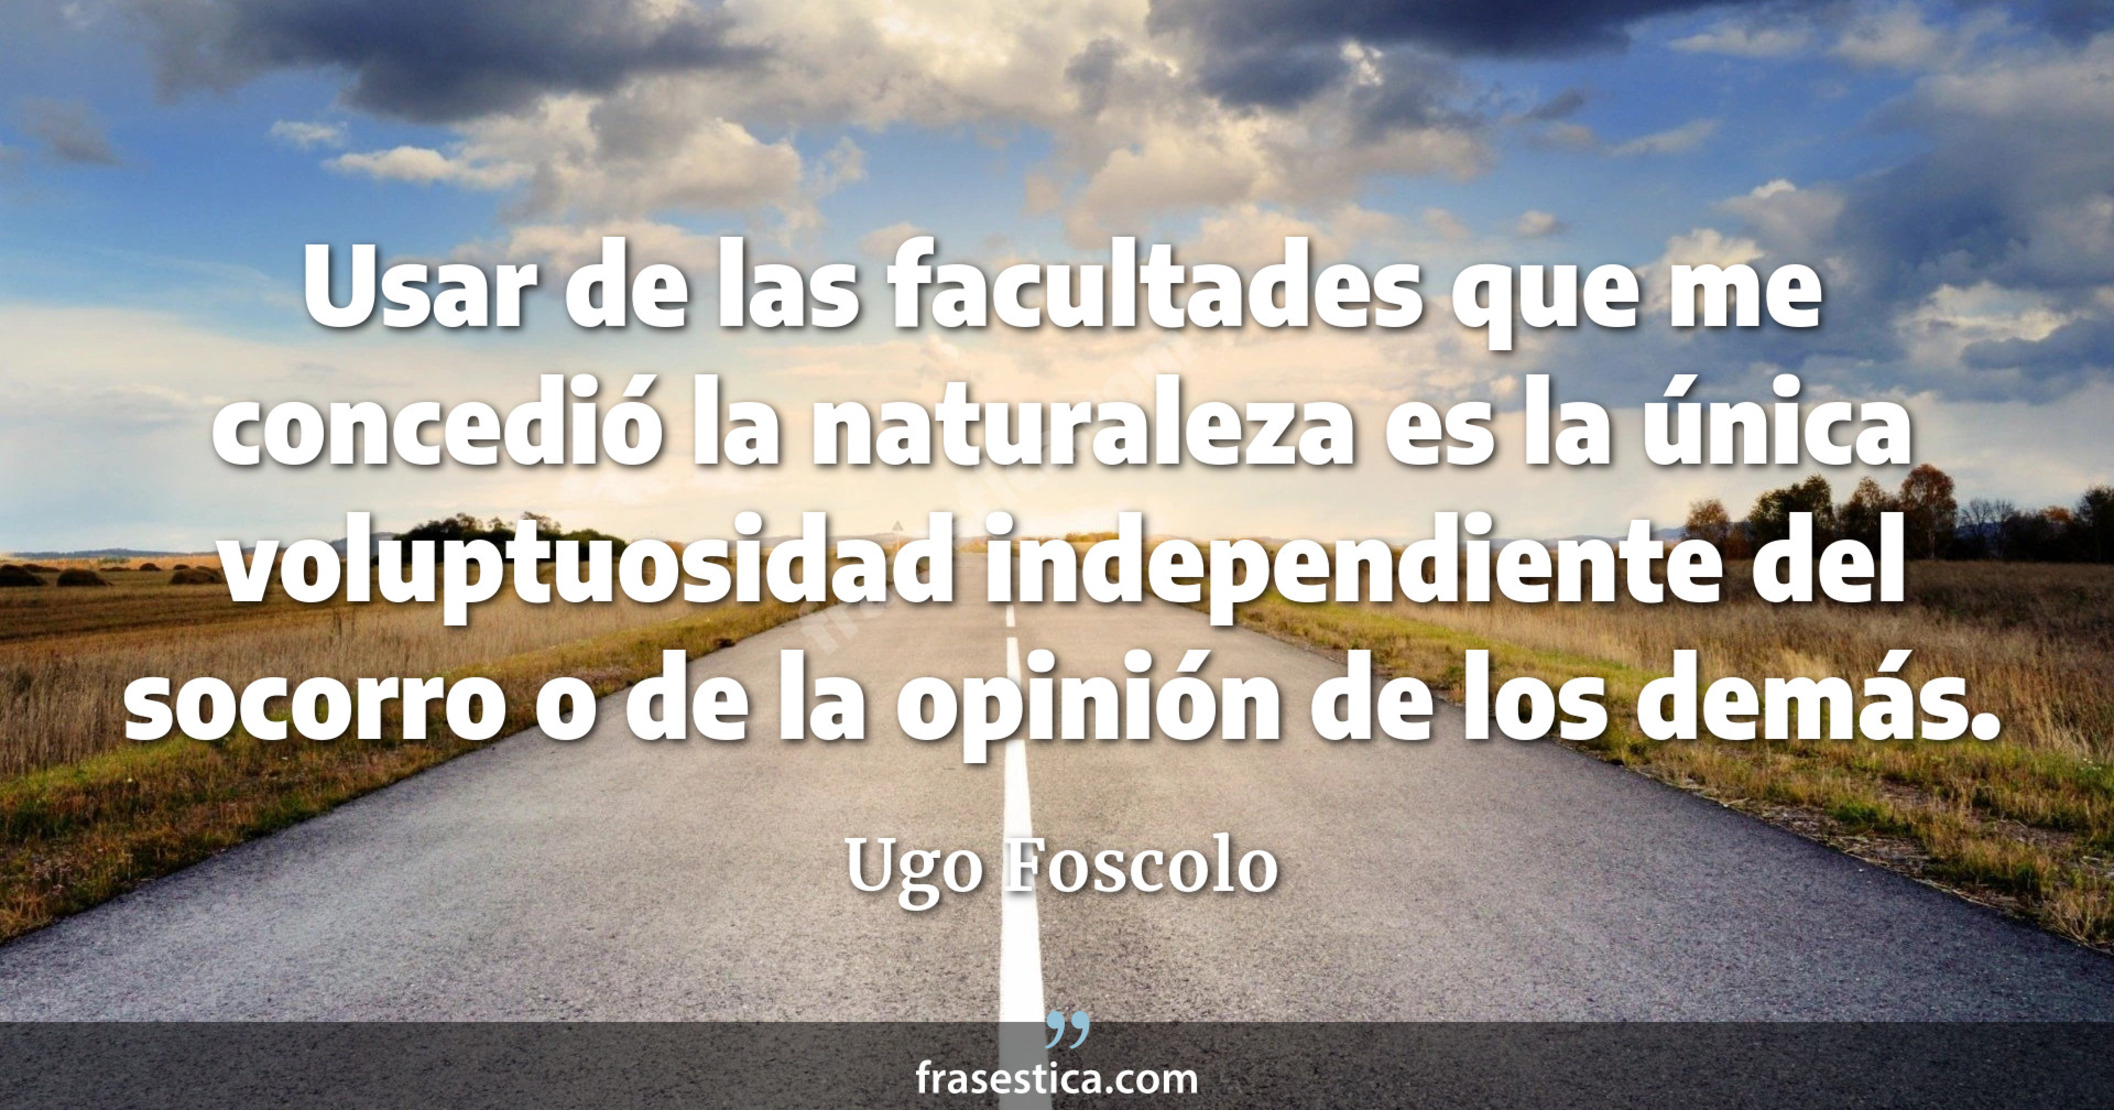 Usar de las facultades que me concedió la naturaleza es la única voluptuosidad independiente del socorro o de la opinión de los demás. - Ugo Foscolo